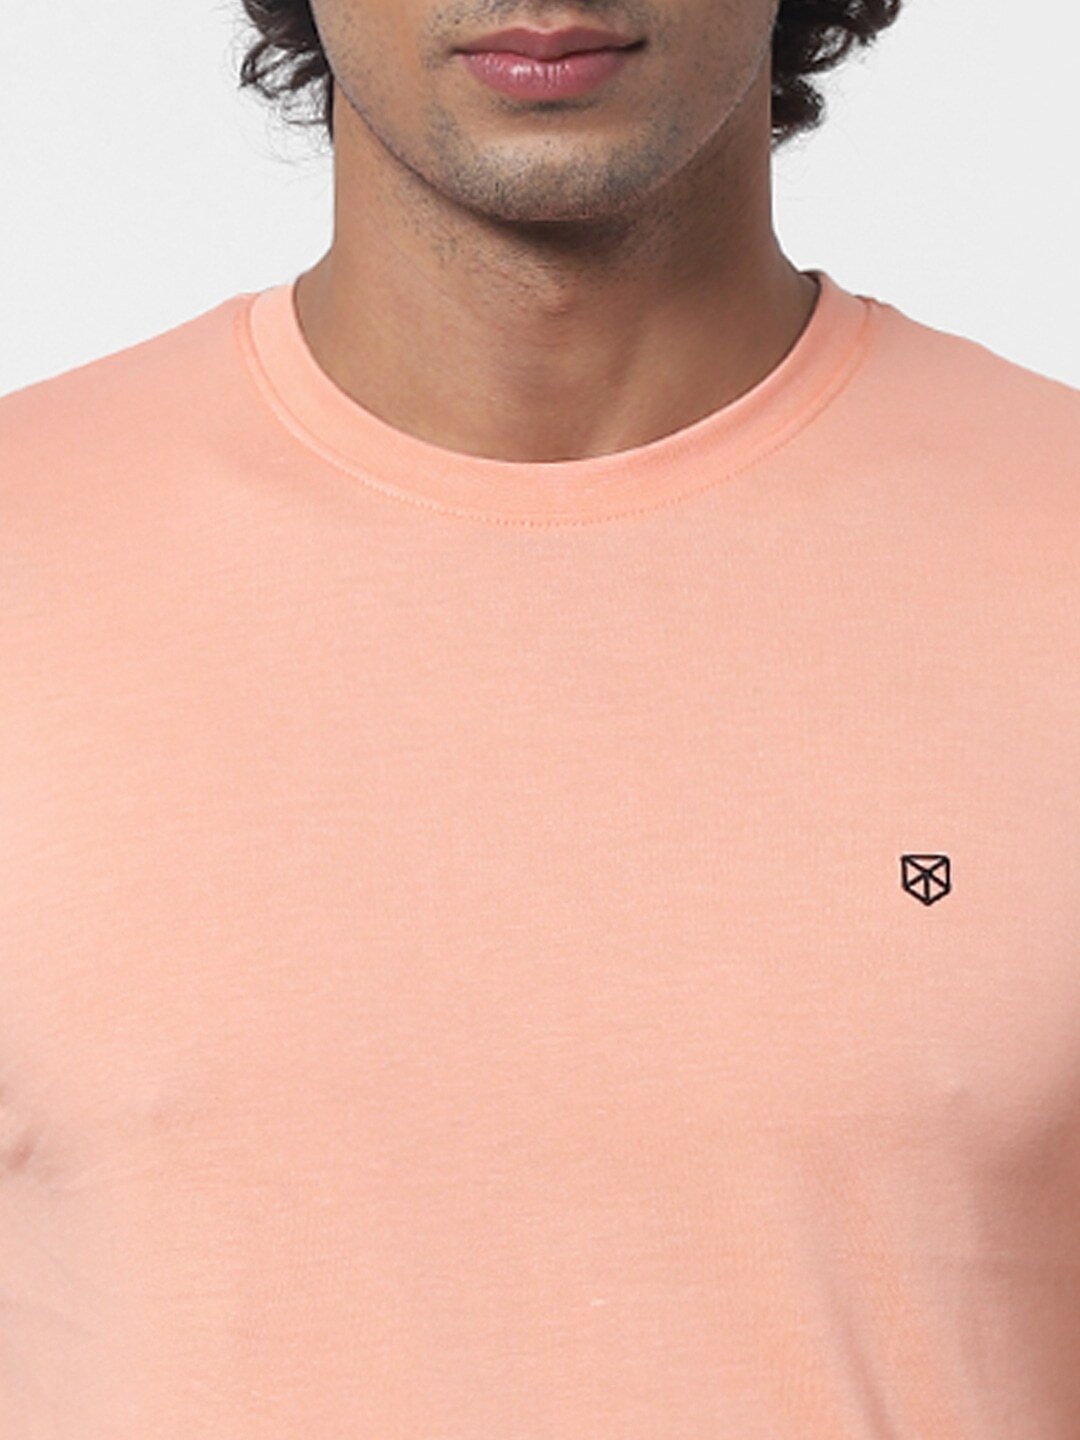 Jack Jones Men Peach-Coloured Solid Slim Fit Round Neck Pure Cotton T-shirt-2341239014